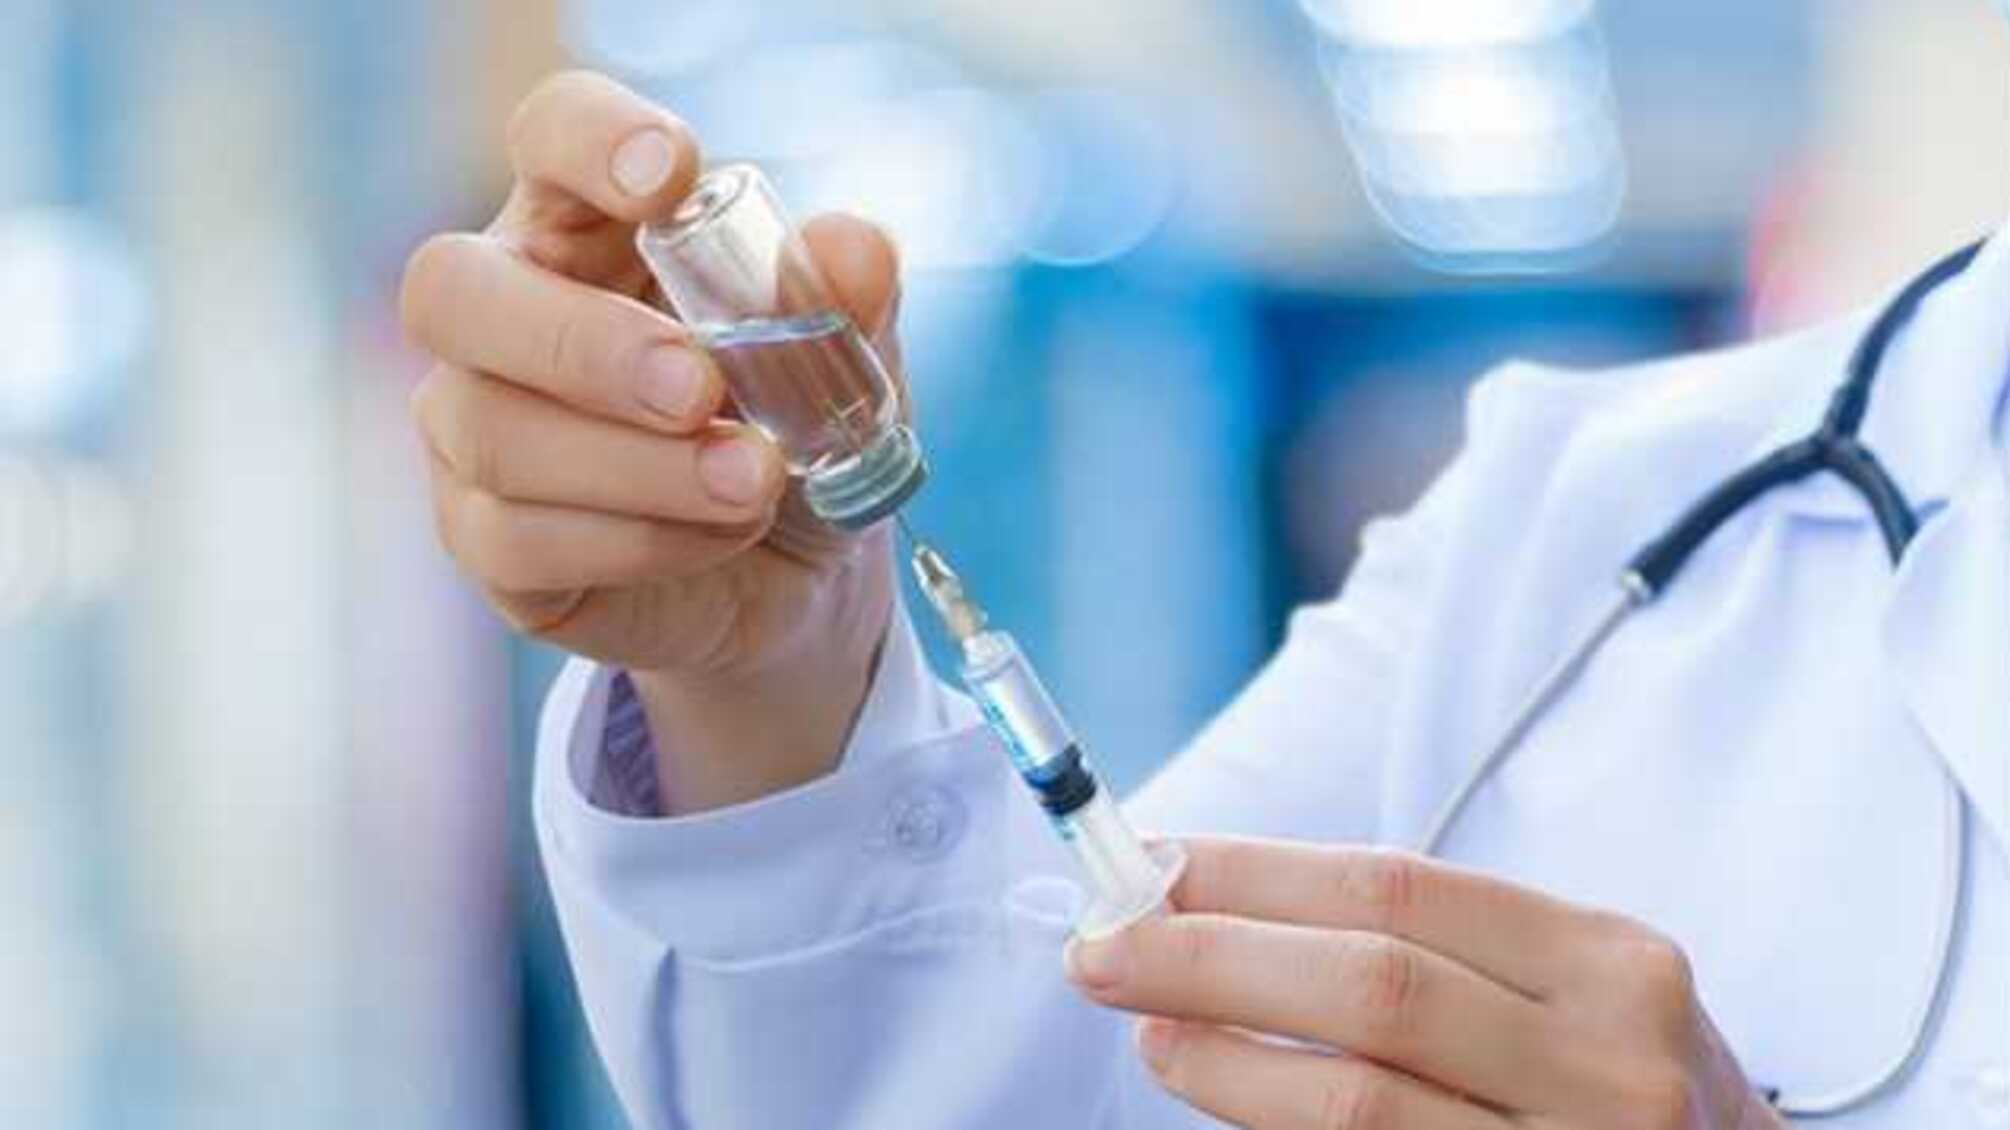 Три вакцины от COVID-19 проходят клинические испытания, - ВОЗ